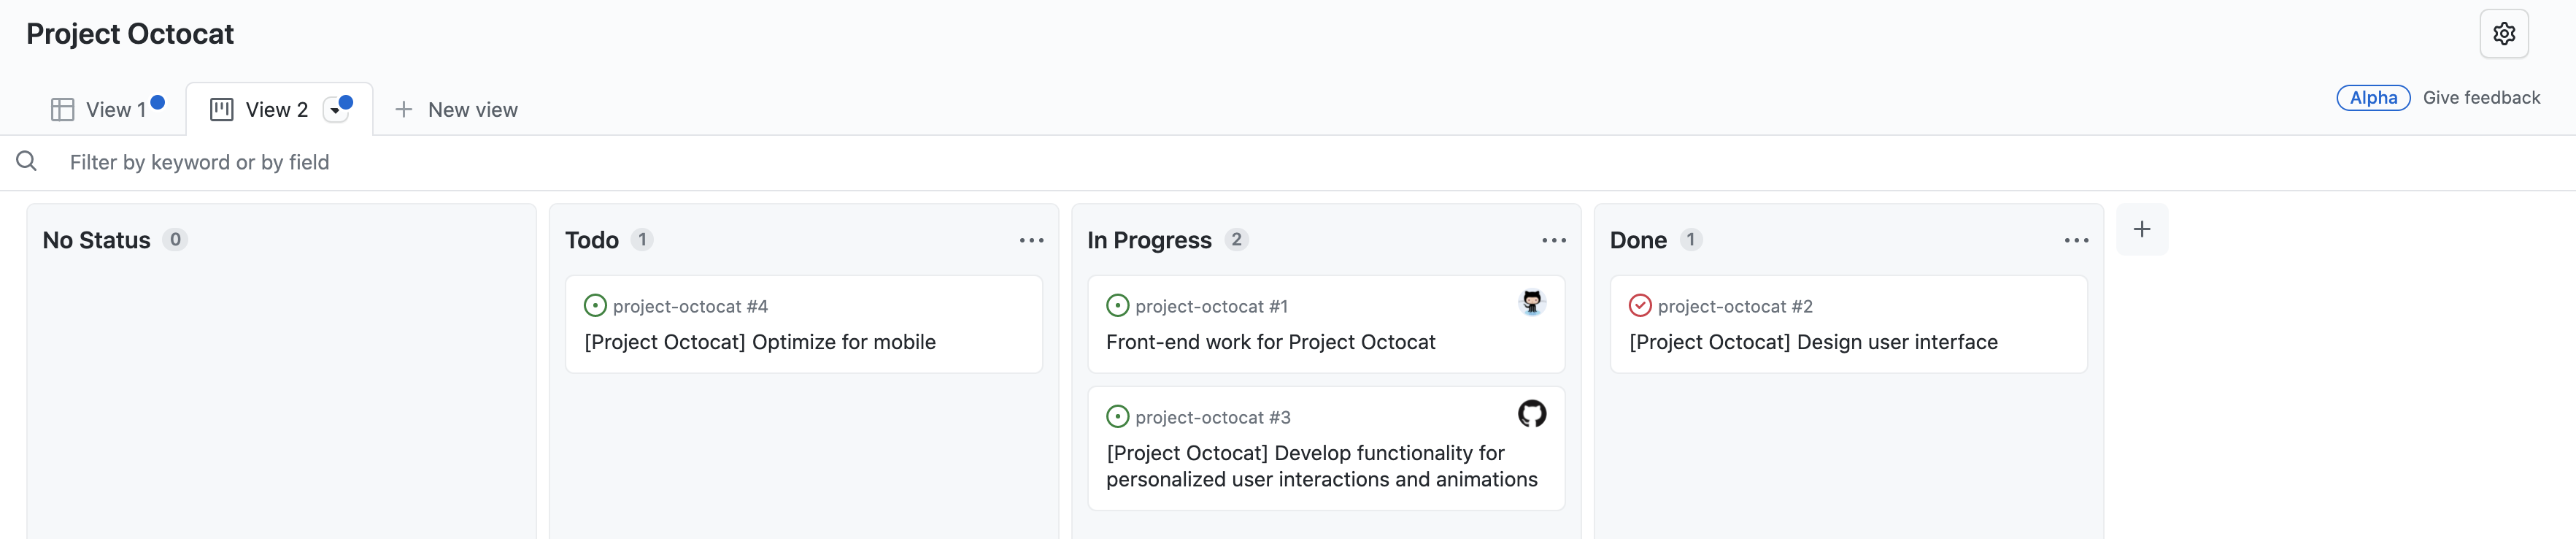 "상태 없음", "할 일", "진행 중", "완료"에 대한 열로 구성된 이슈가 있는 "Project Octocat" 프로젝트의 보드 보기 스크린샷.